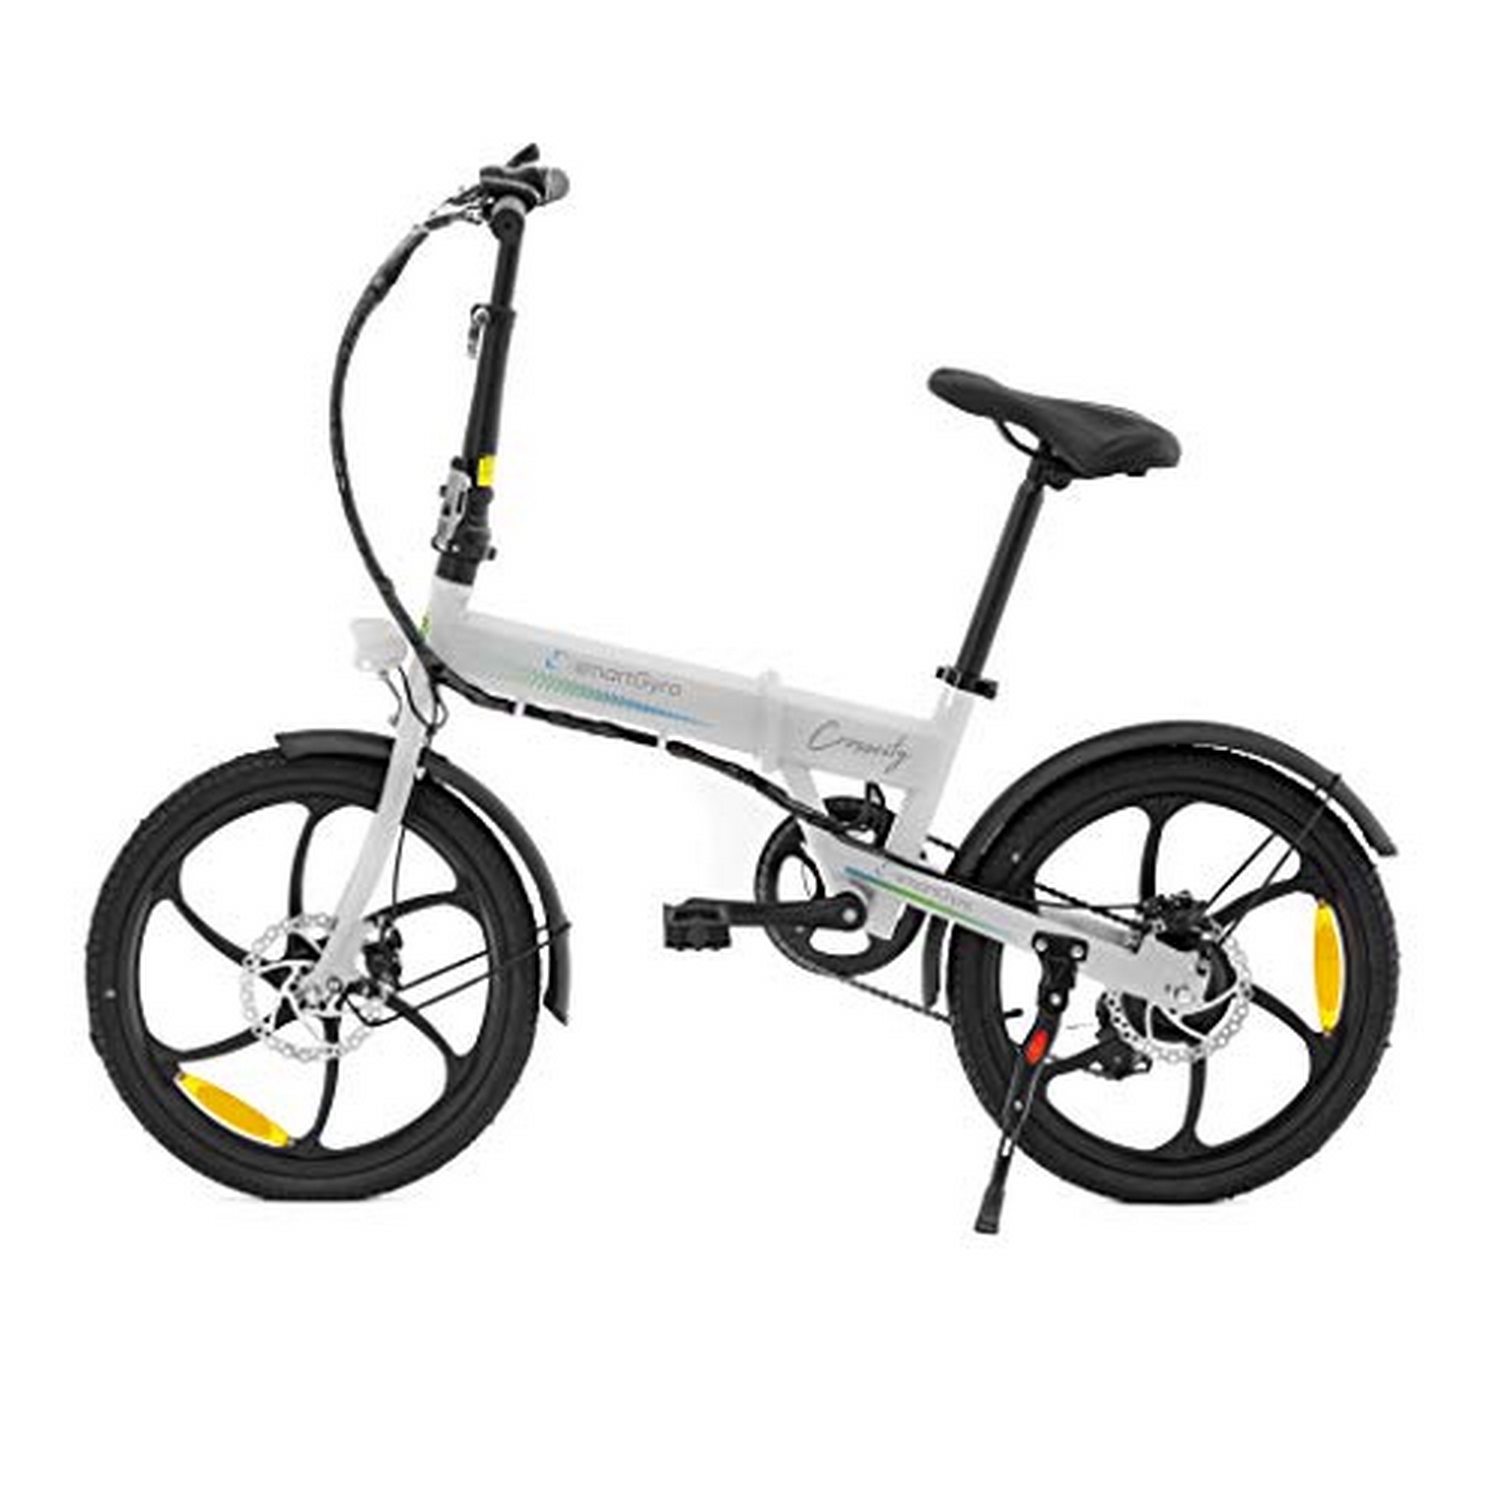 Smartgyro Ebike Crosscity white bicicleta urbana ruedas de 20 asistente al pedaleo plegable batería litio 36v 4.4 mah freno disco 6 velocidades 250w 25